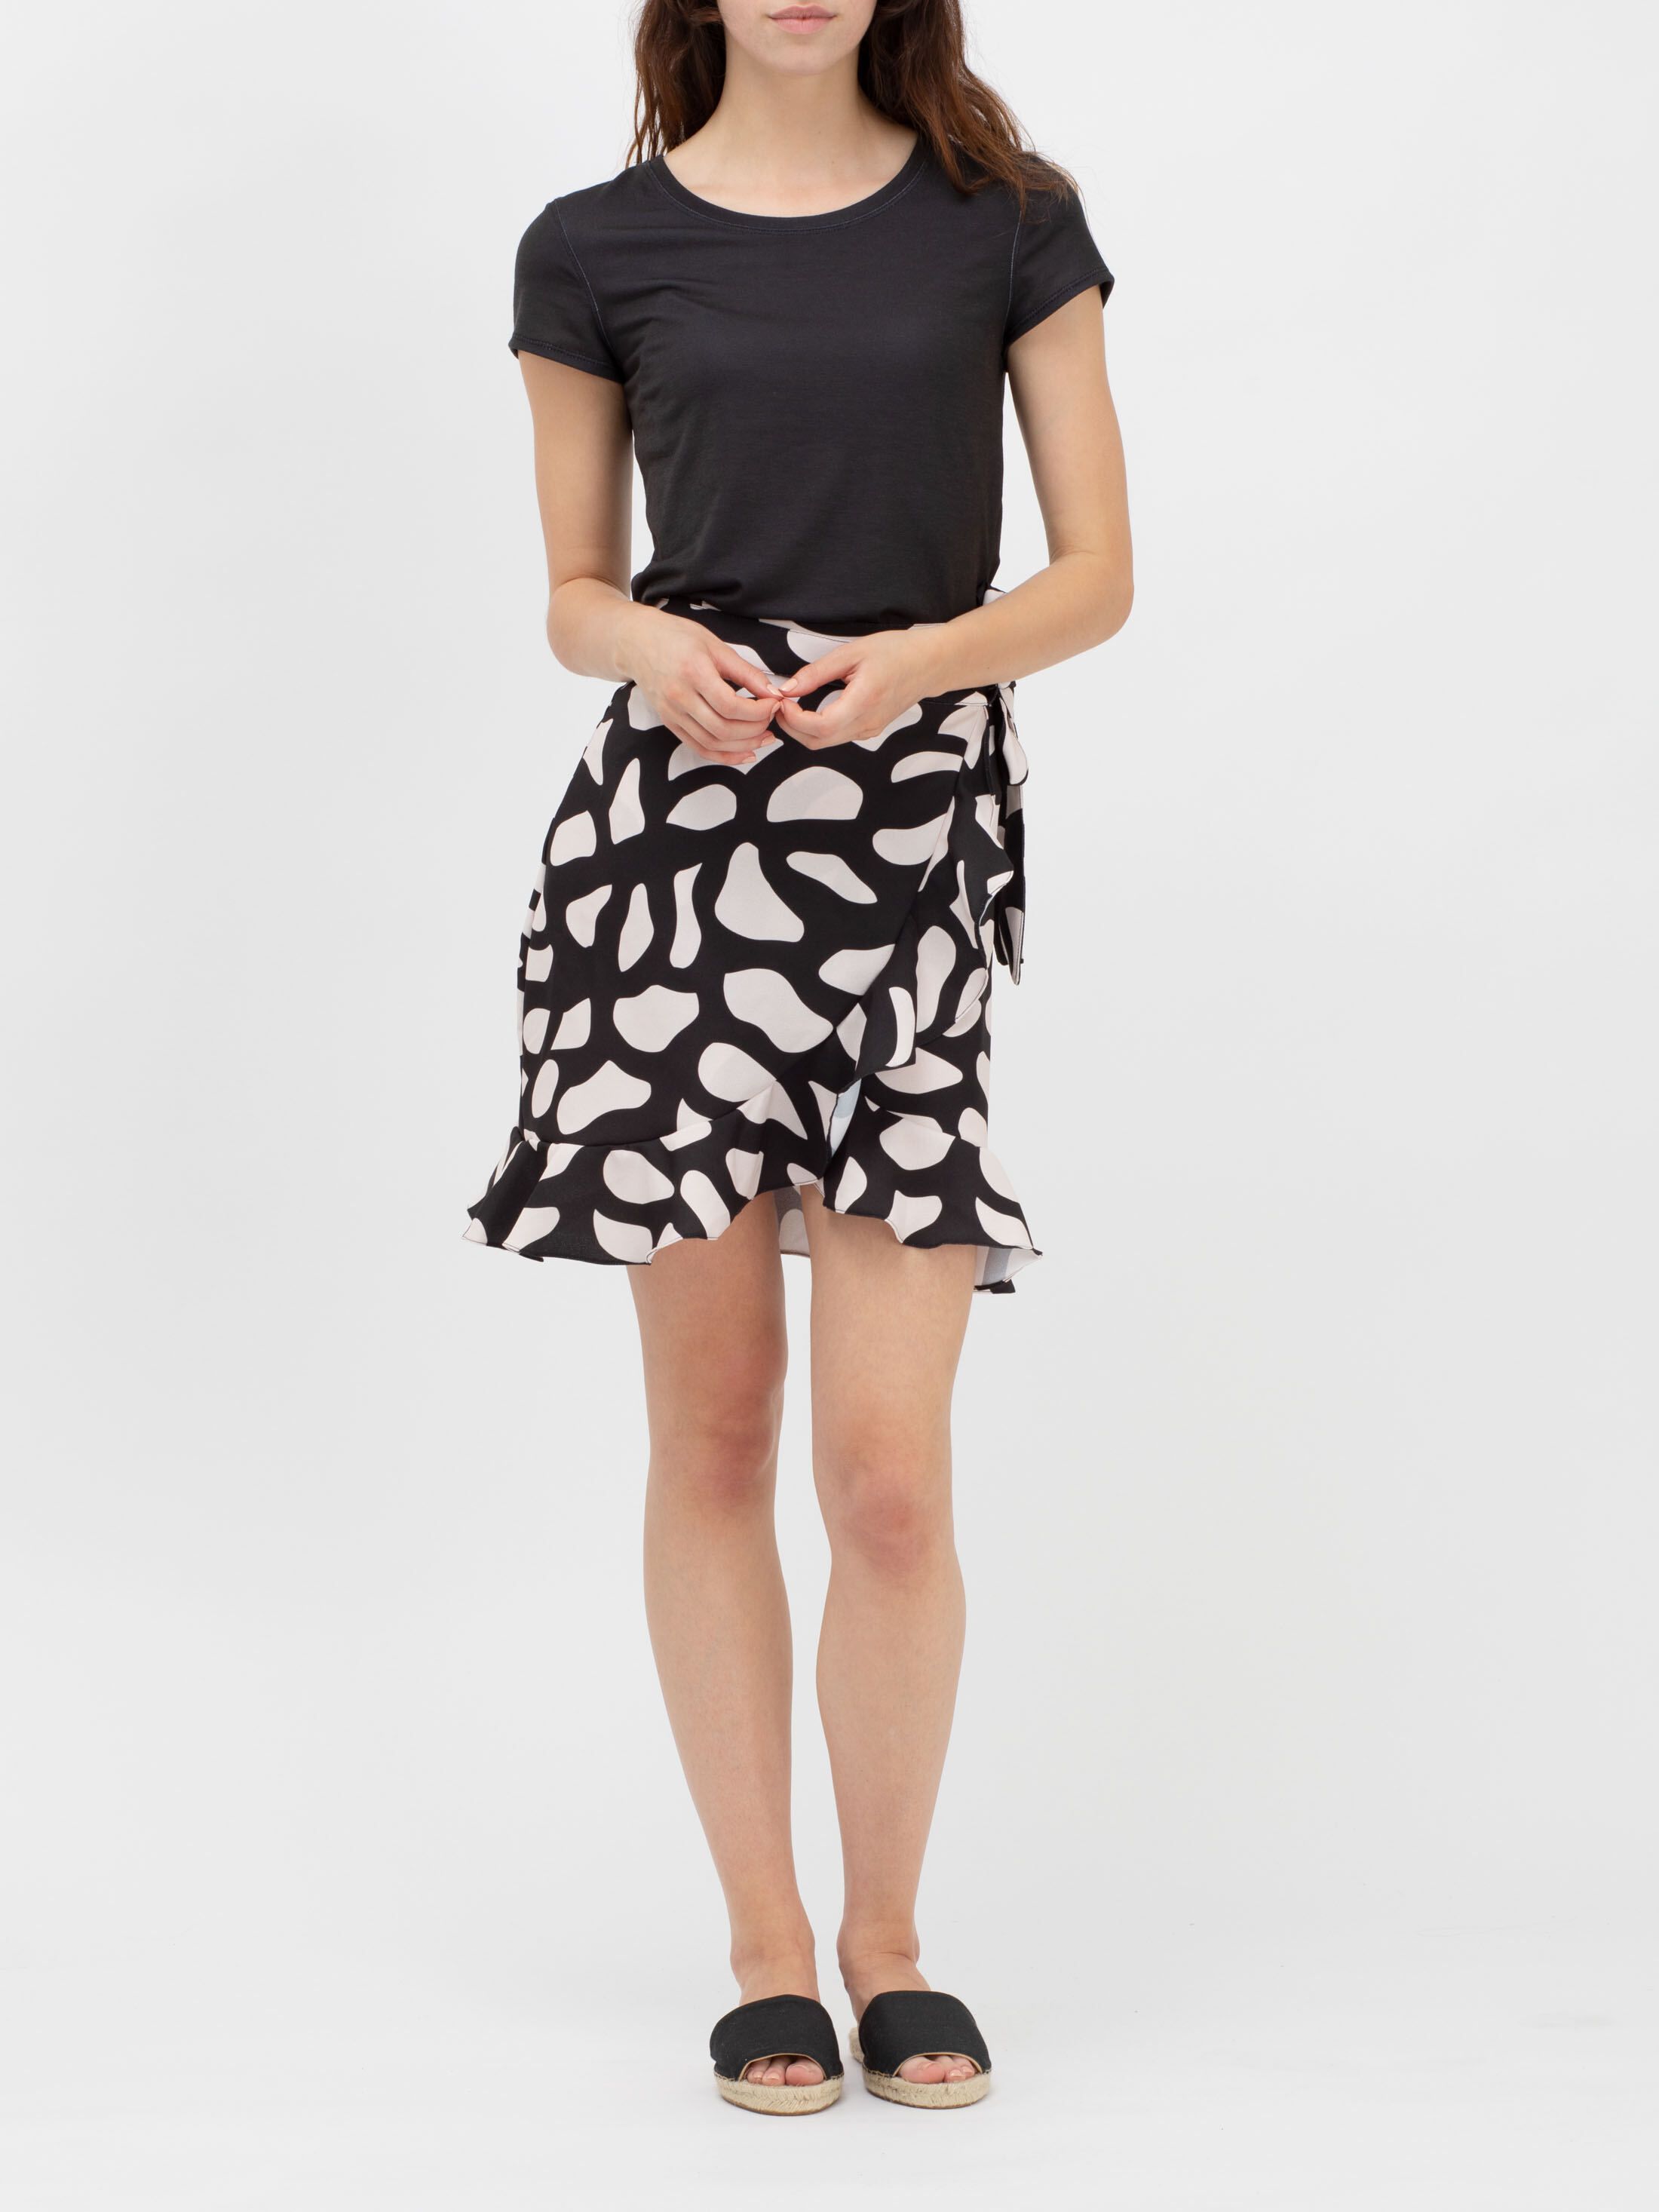 design your own flounce skirt